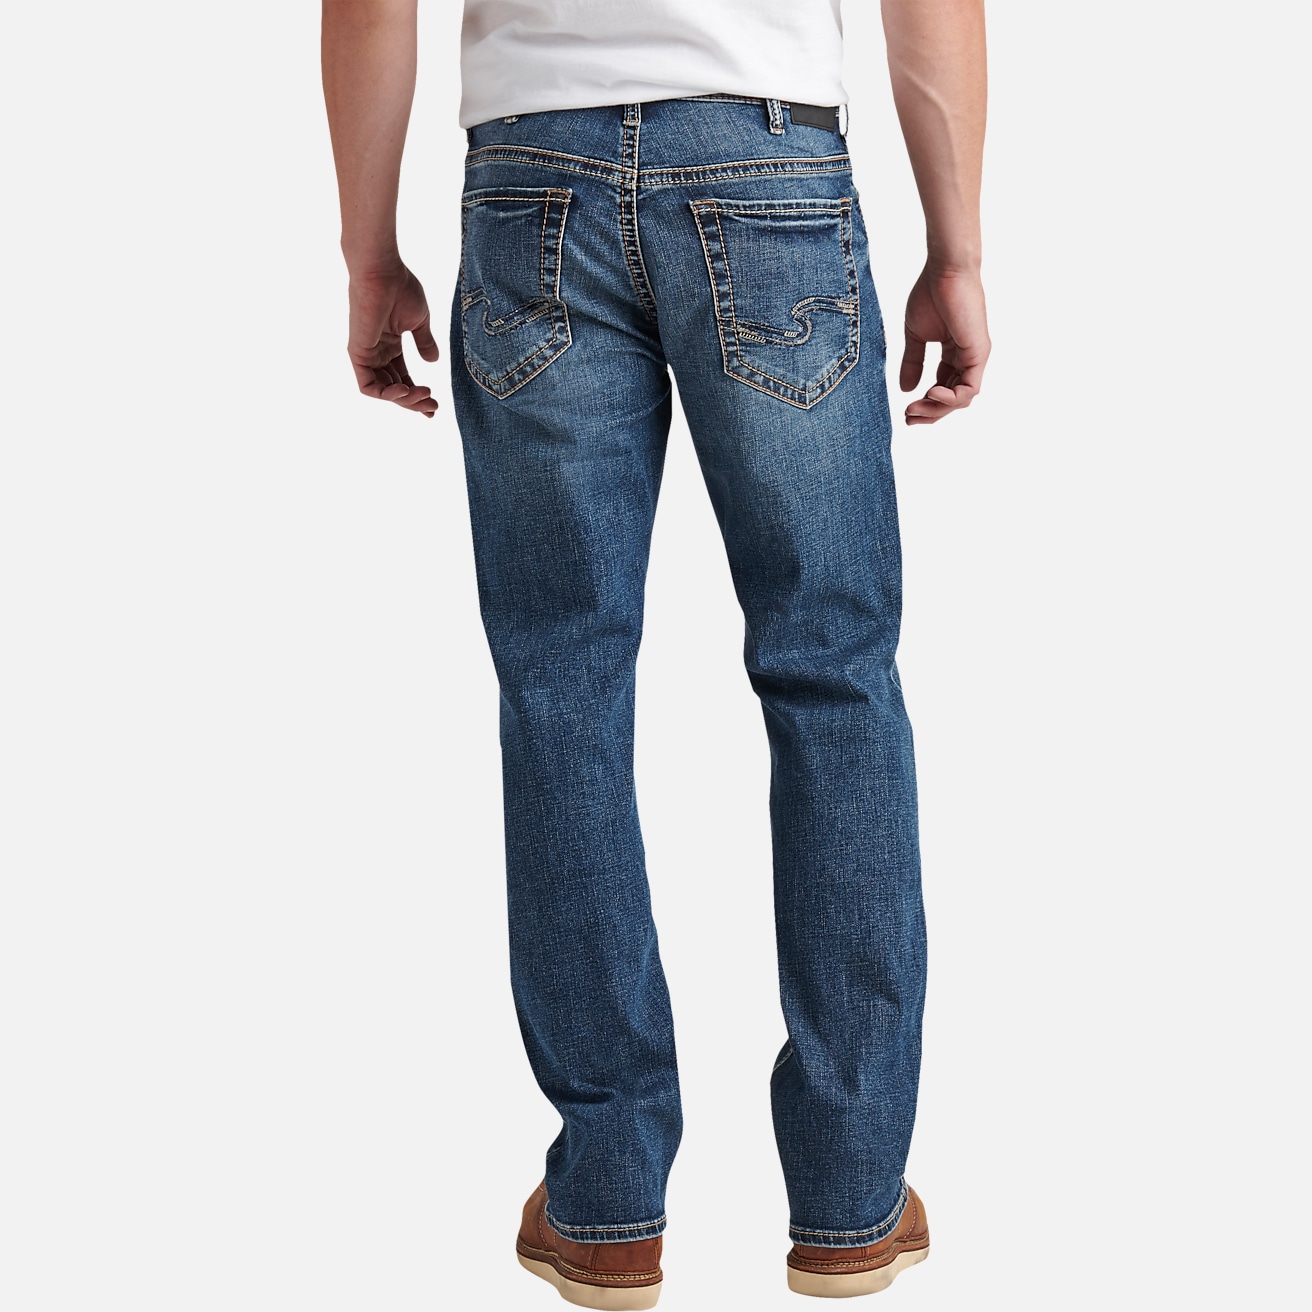 Joseph Abboud Slim Fit Jeans, All Sale